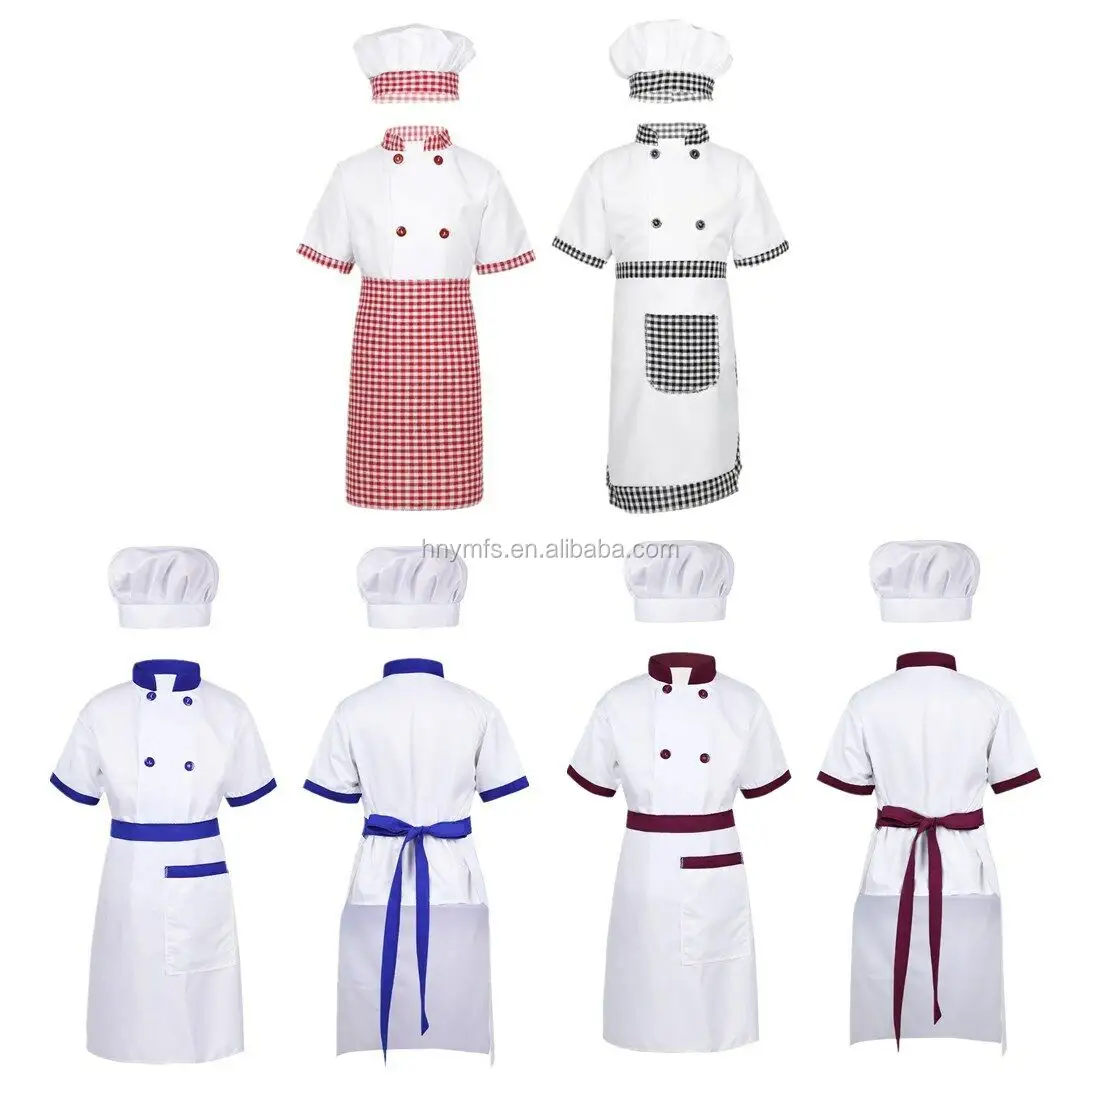 Uniformes de manuseio branco manga longa, roupa de chef da amazon